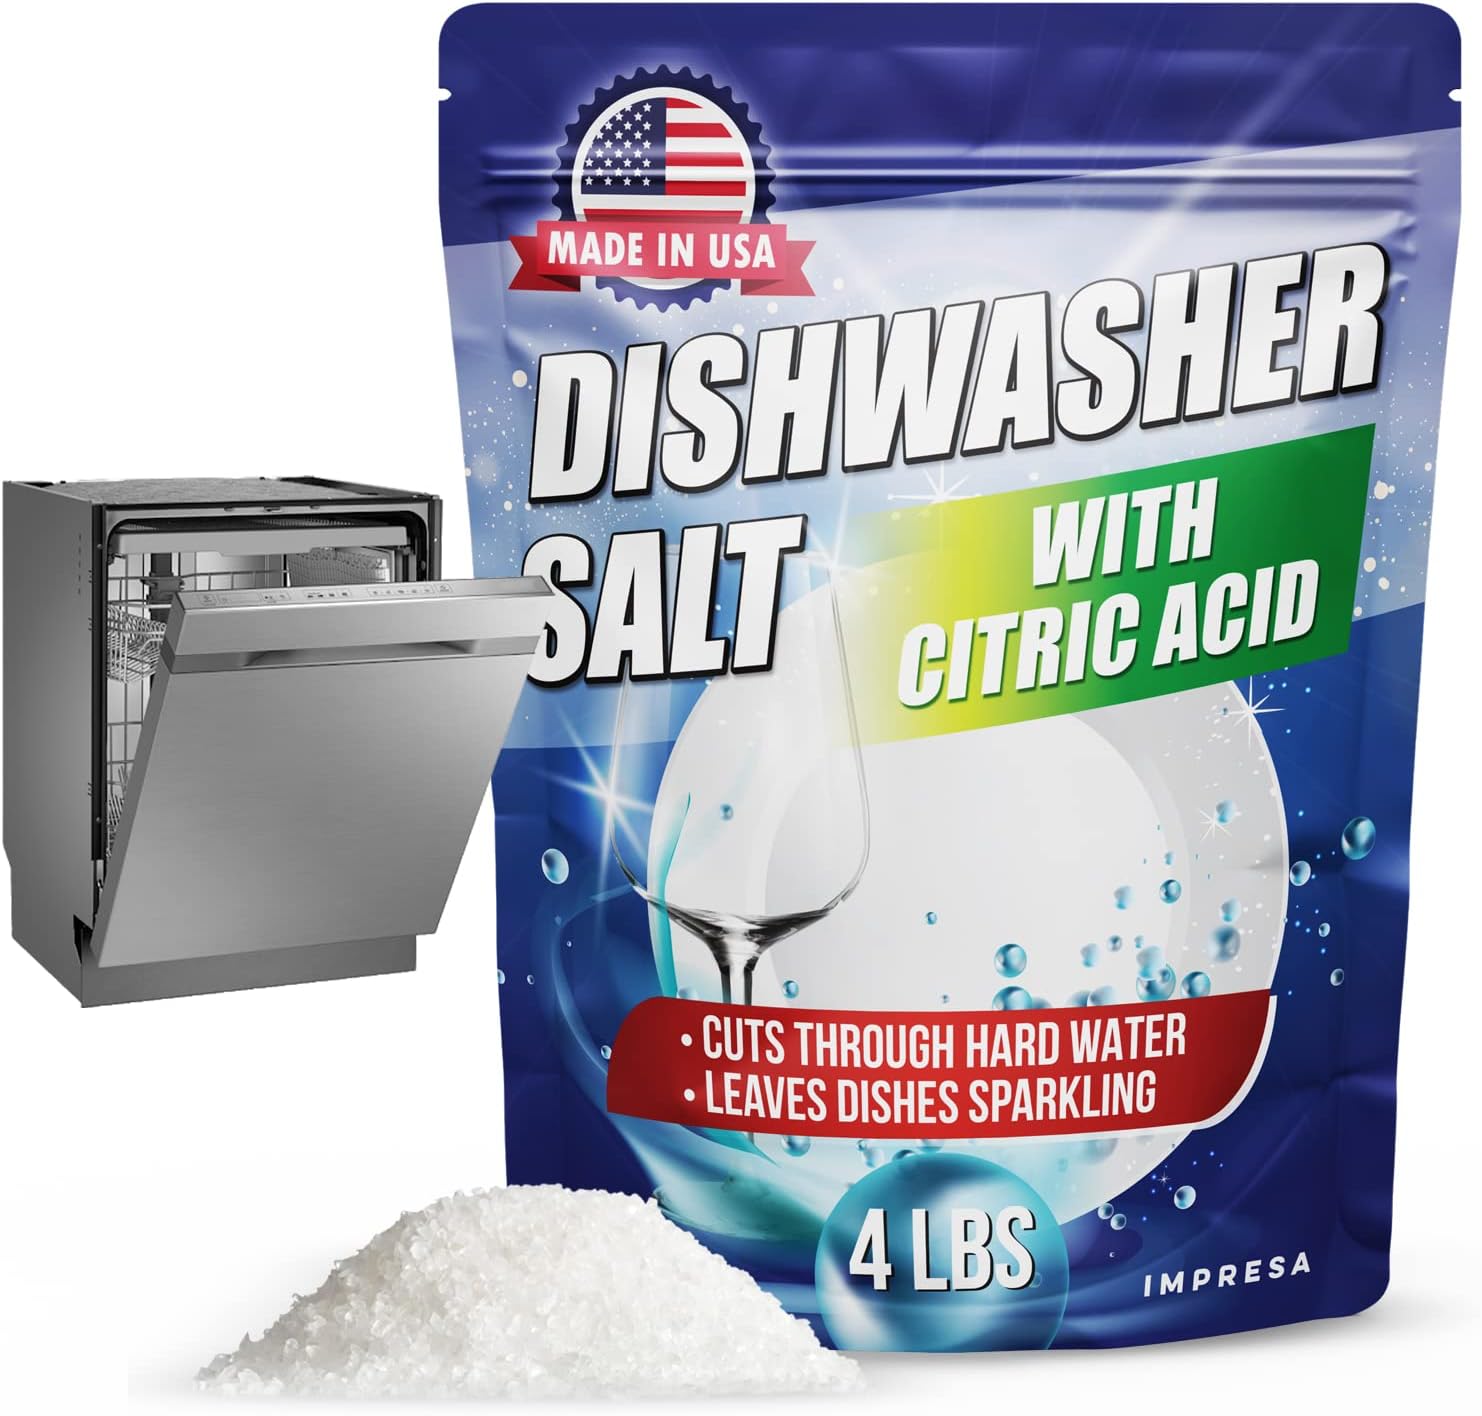 Dishwasher Salt with Citric Acid Cleaner - 4LB – Impresa Products